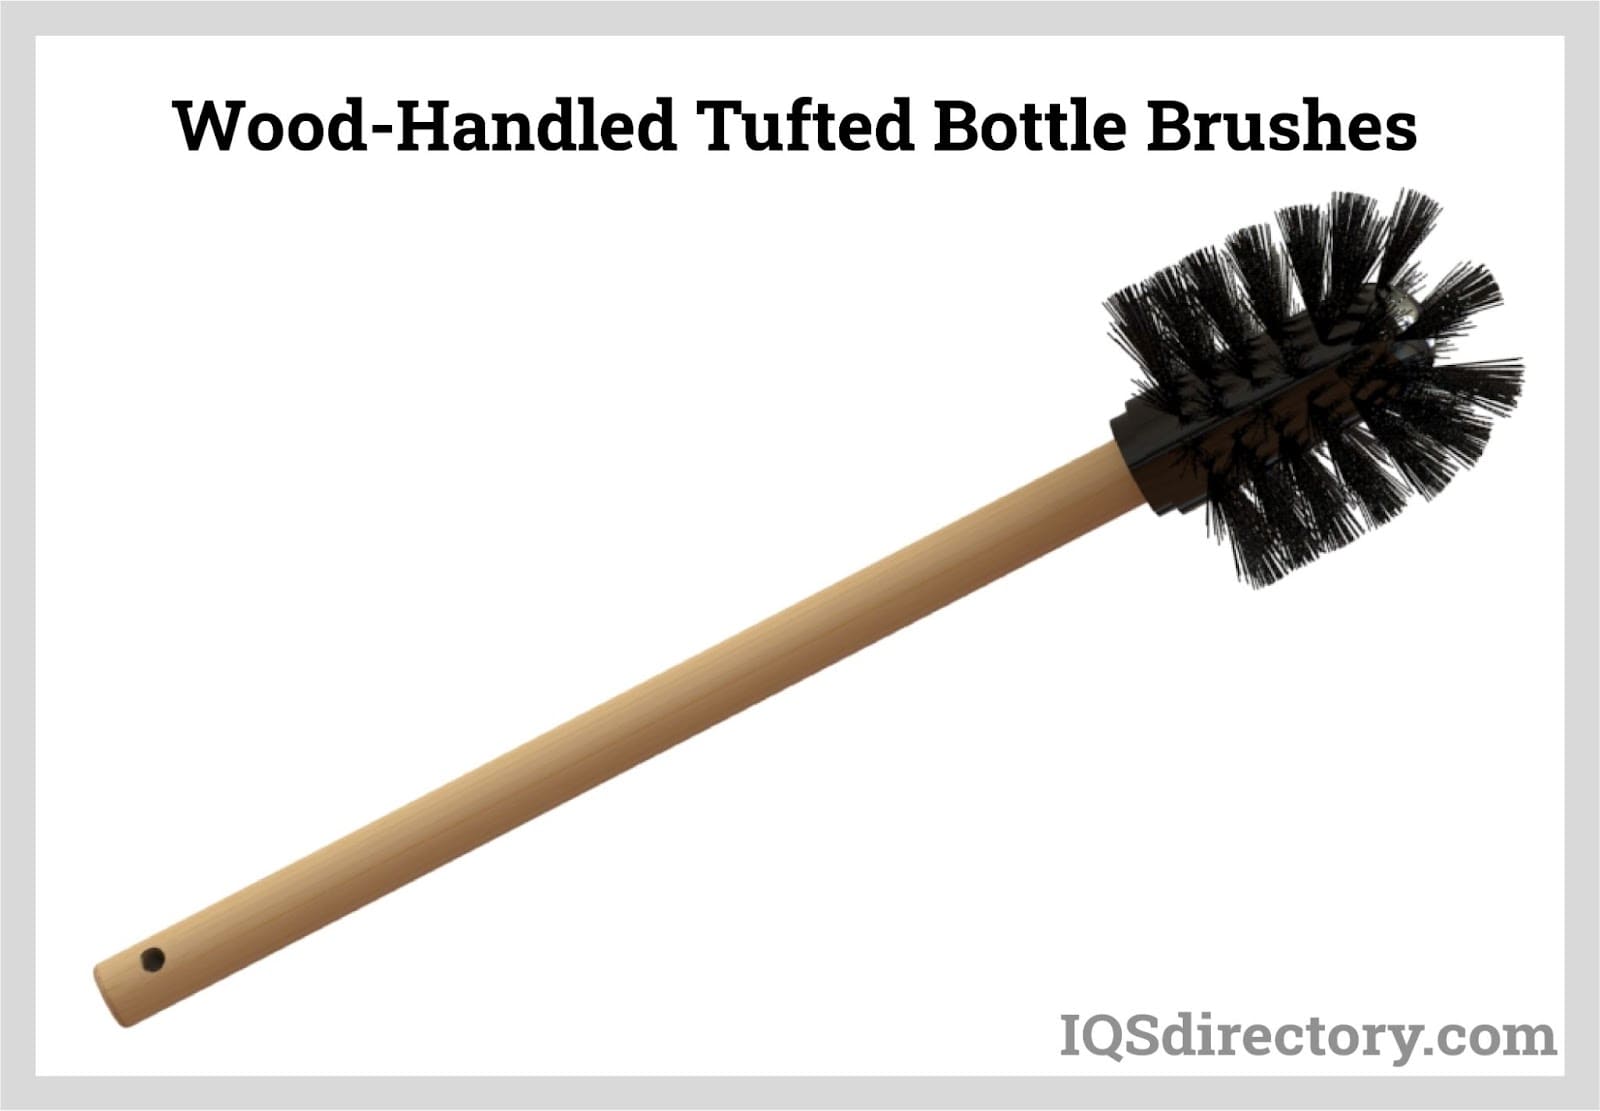 Wood-Handled Tufted Bottle Brushes